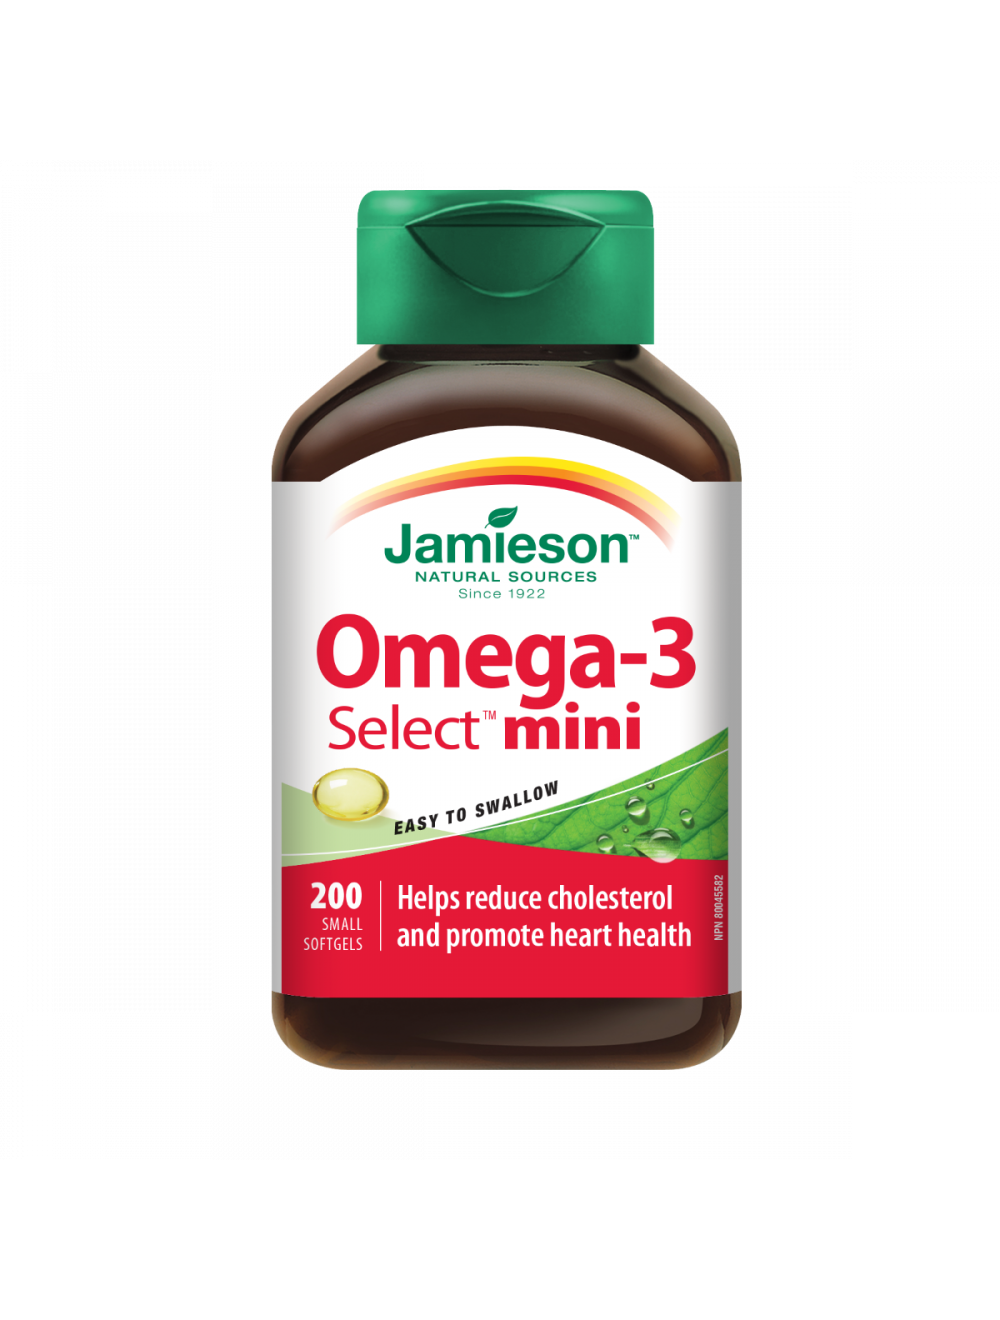 jamieson omega-3 select mini